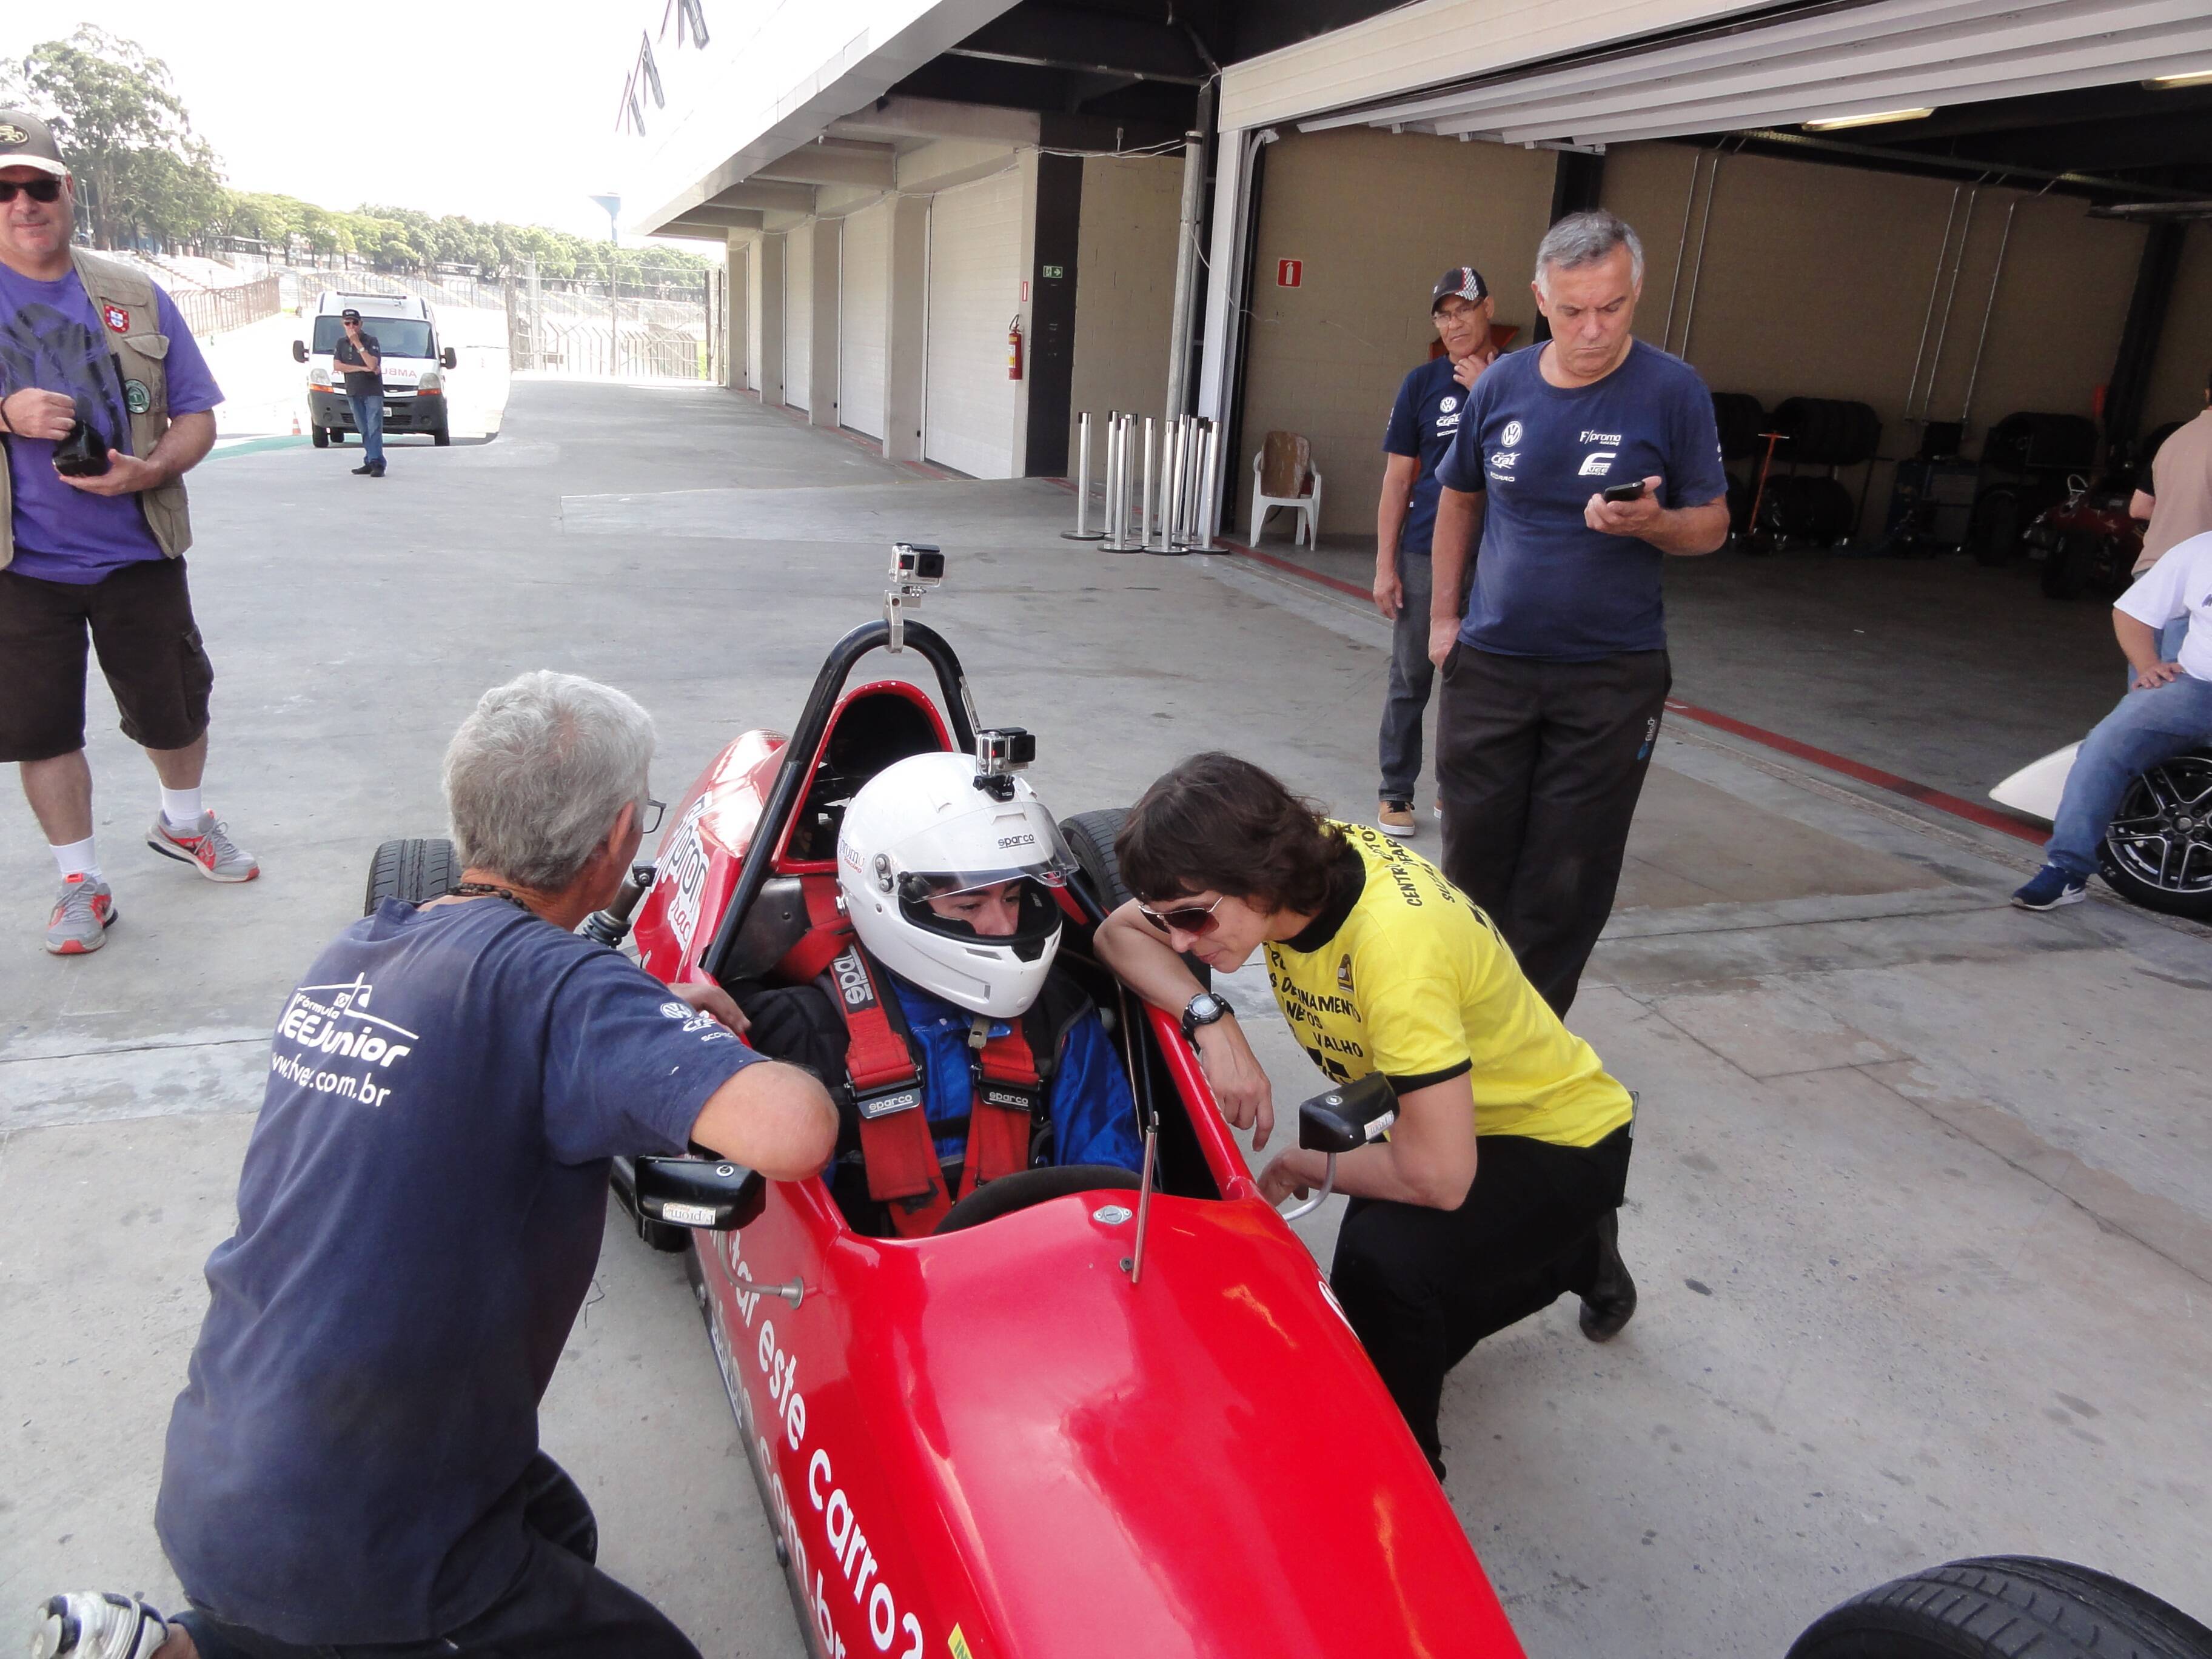 Experiência com Fórmula vee. Foto: Foto: Marcos Tadeu Batista / Velocidade em Foco